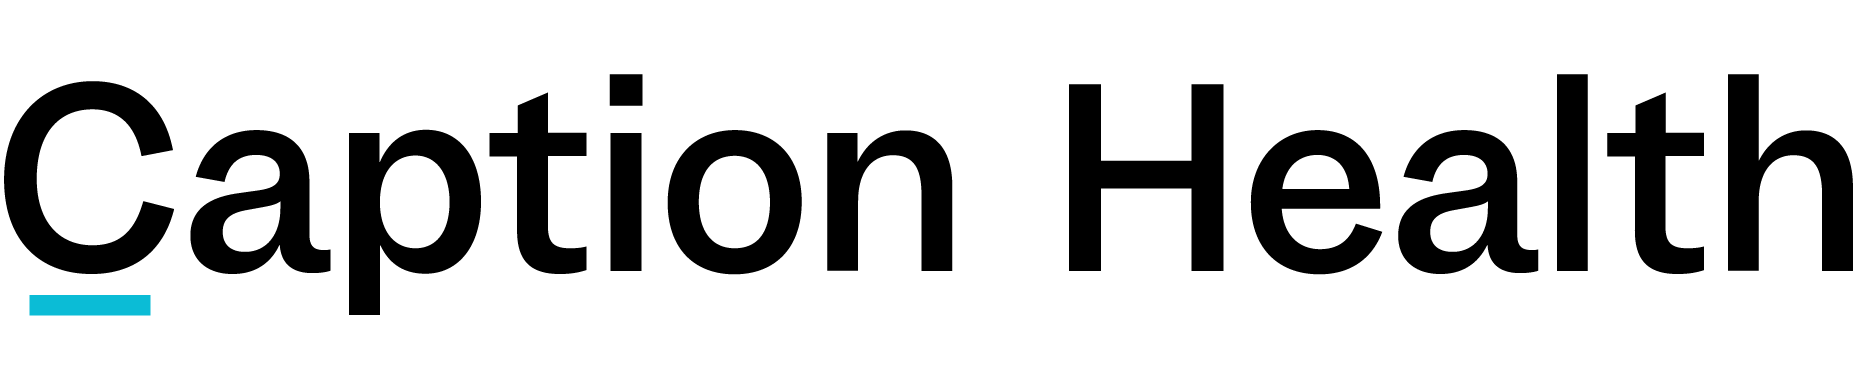 logo captionhealth black